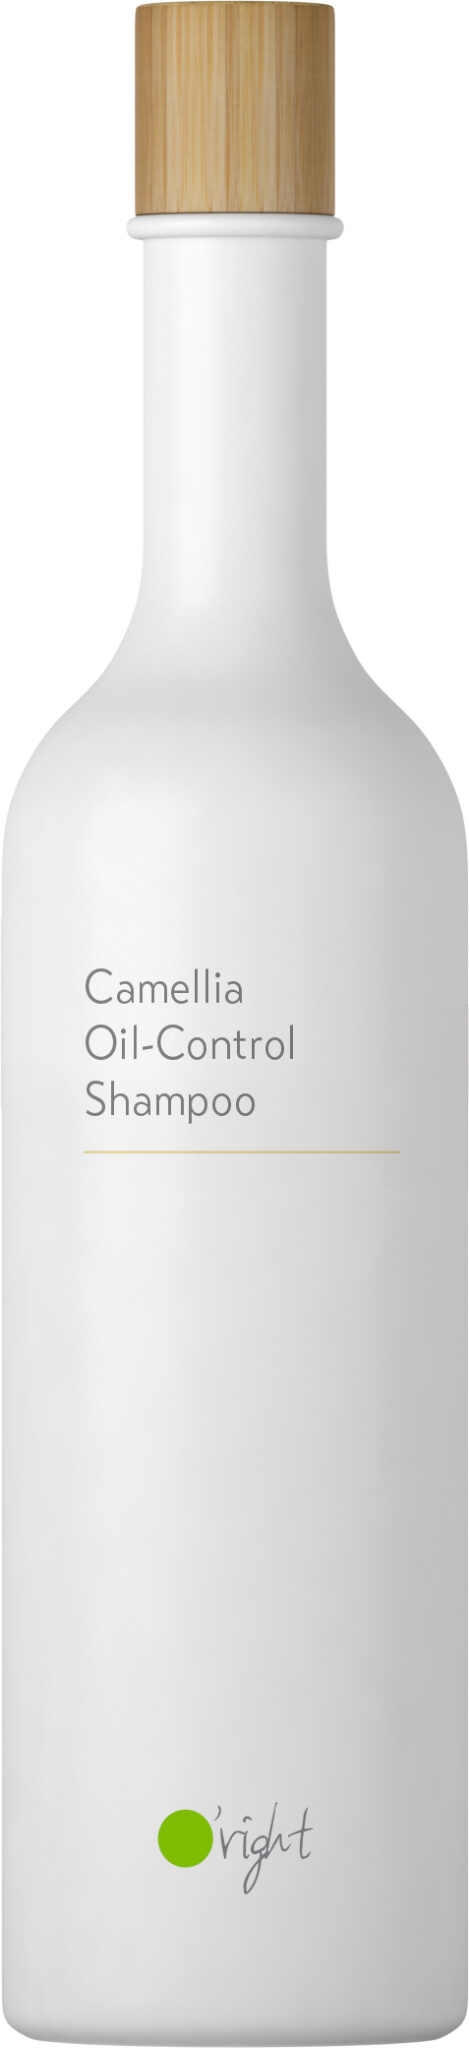 oright szampon z kamelii do włosów przetłuszczających się 400ml opinie